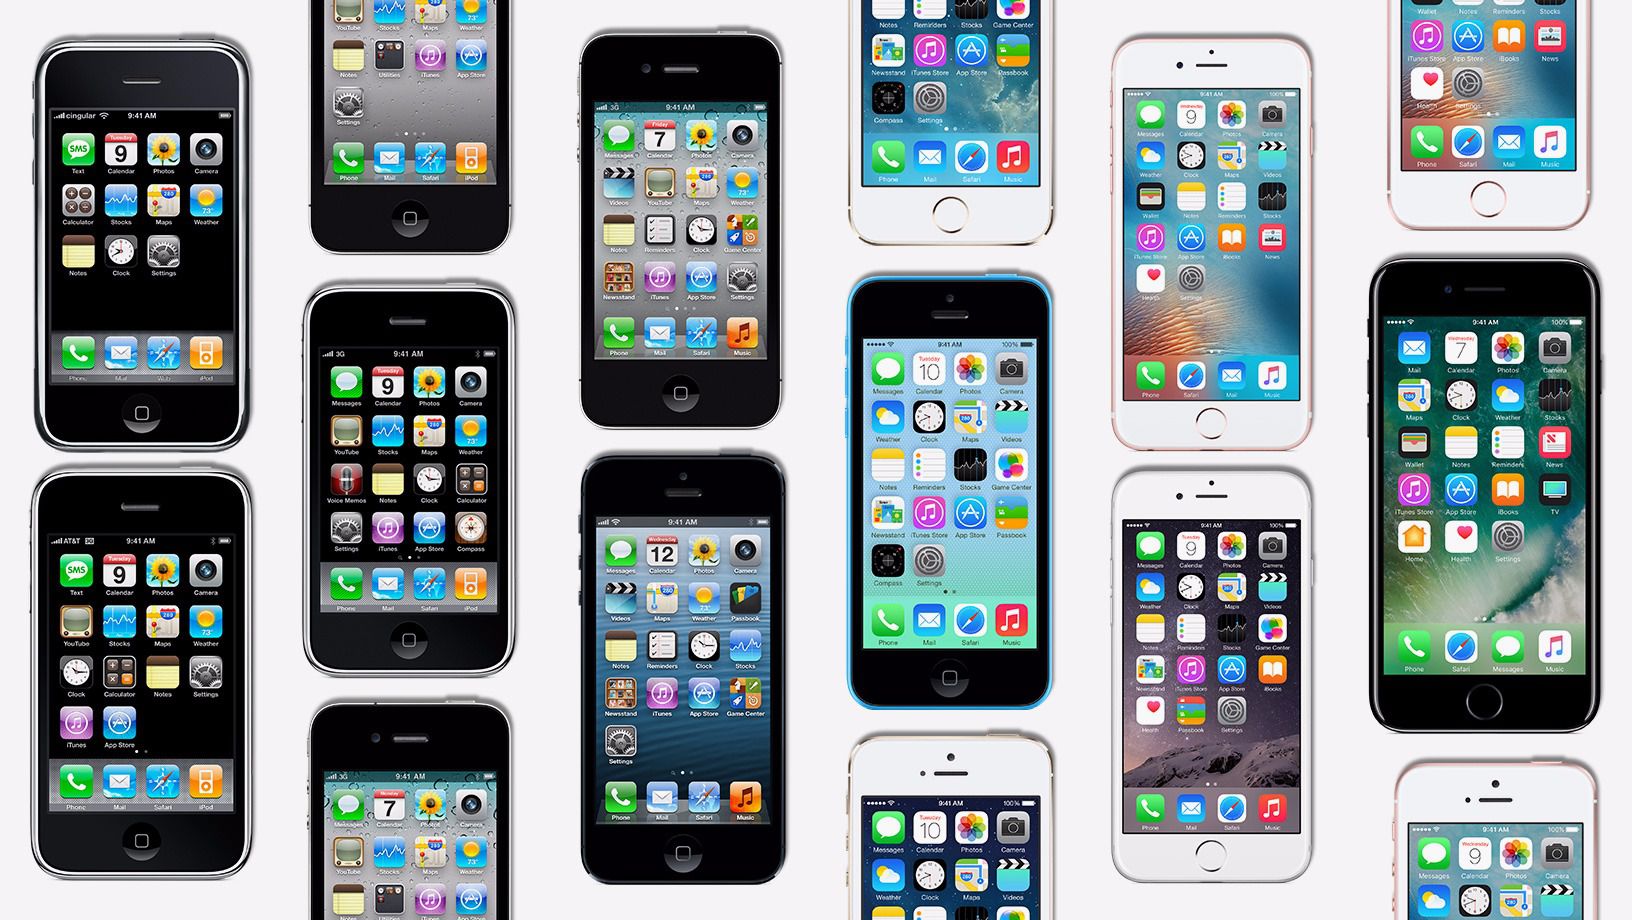 एप्पल ने स्वीकार किया है कि यह जानबूझकर की गति को धीमा कर पुराने iPhone